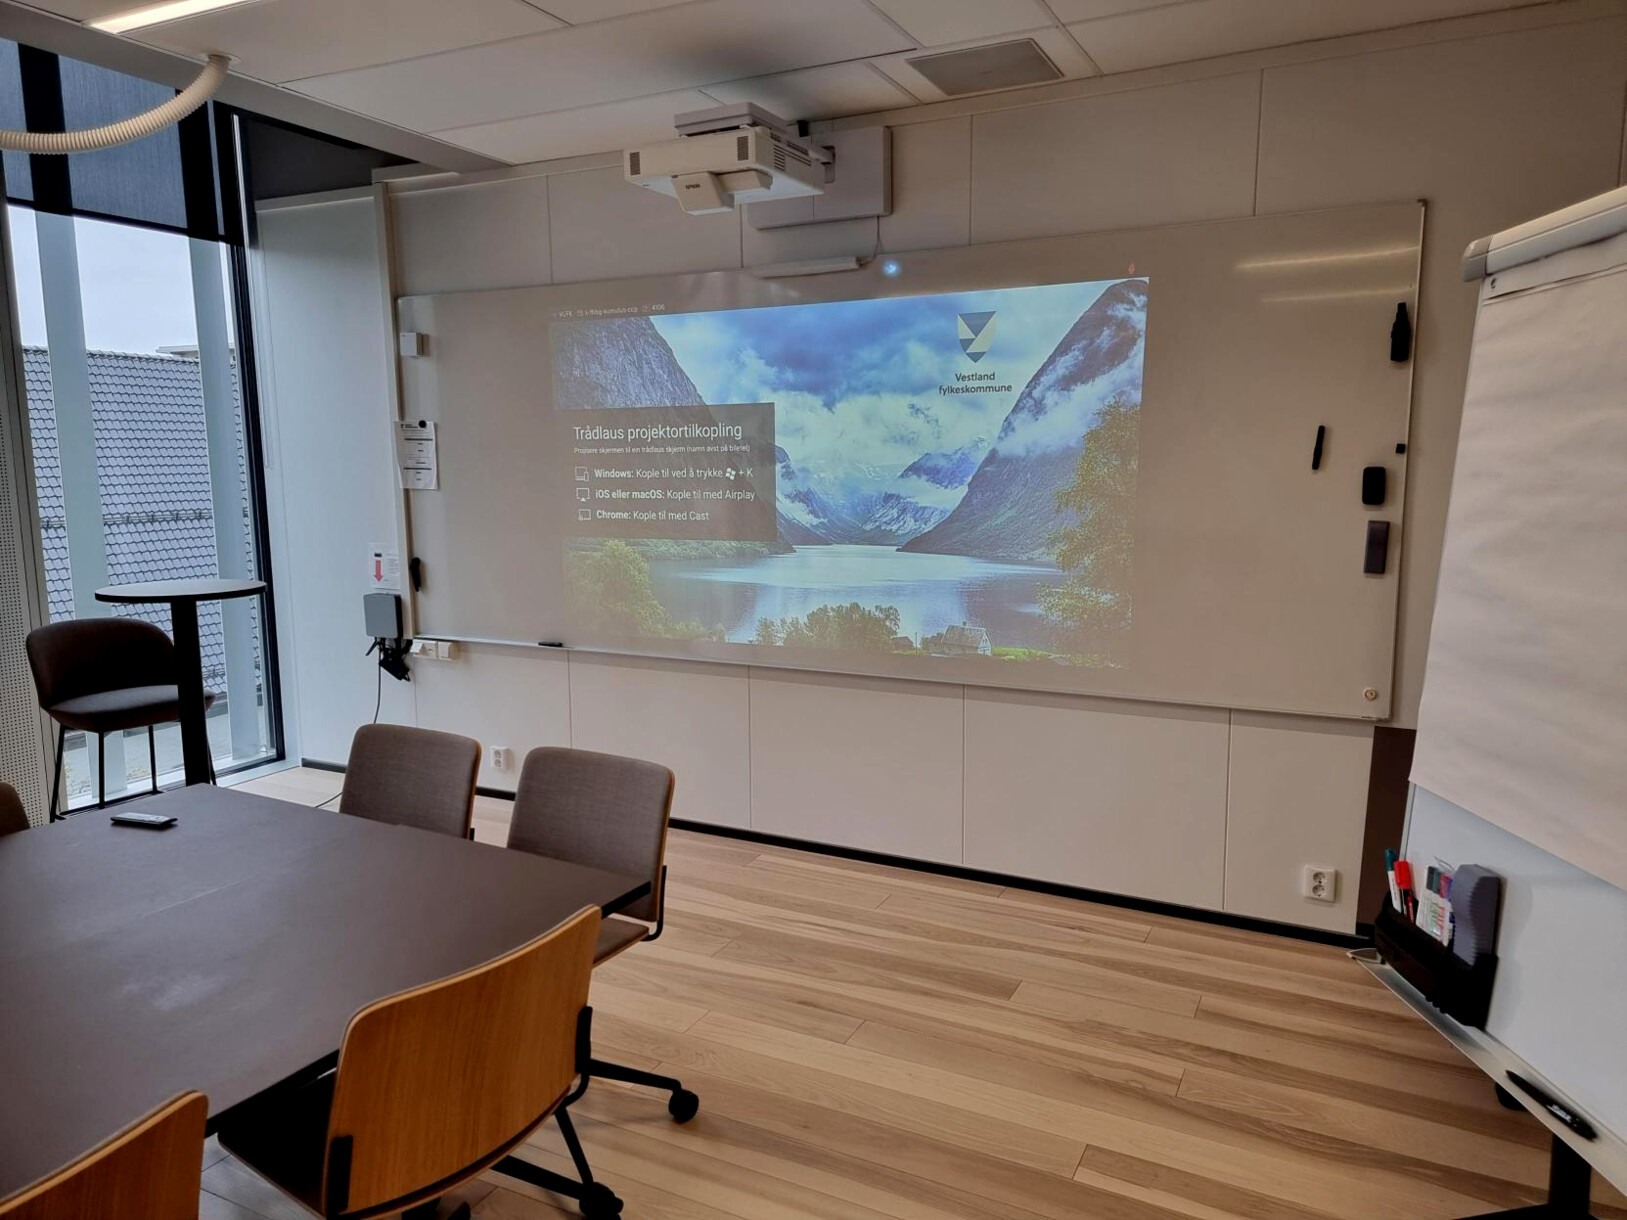 En esta aula de aprendizaje híbrido, los participantes de la lección remota pueden unirse a sus colegas presenciales utilizando el servicio de videoconferencia web Microsoft Teams.